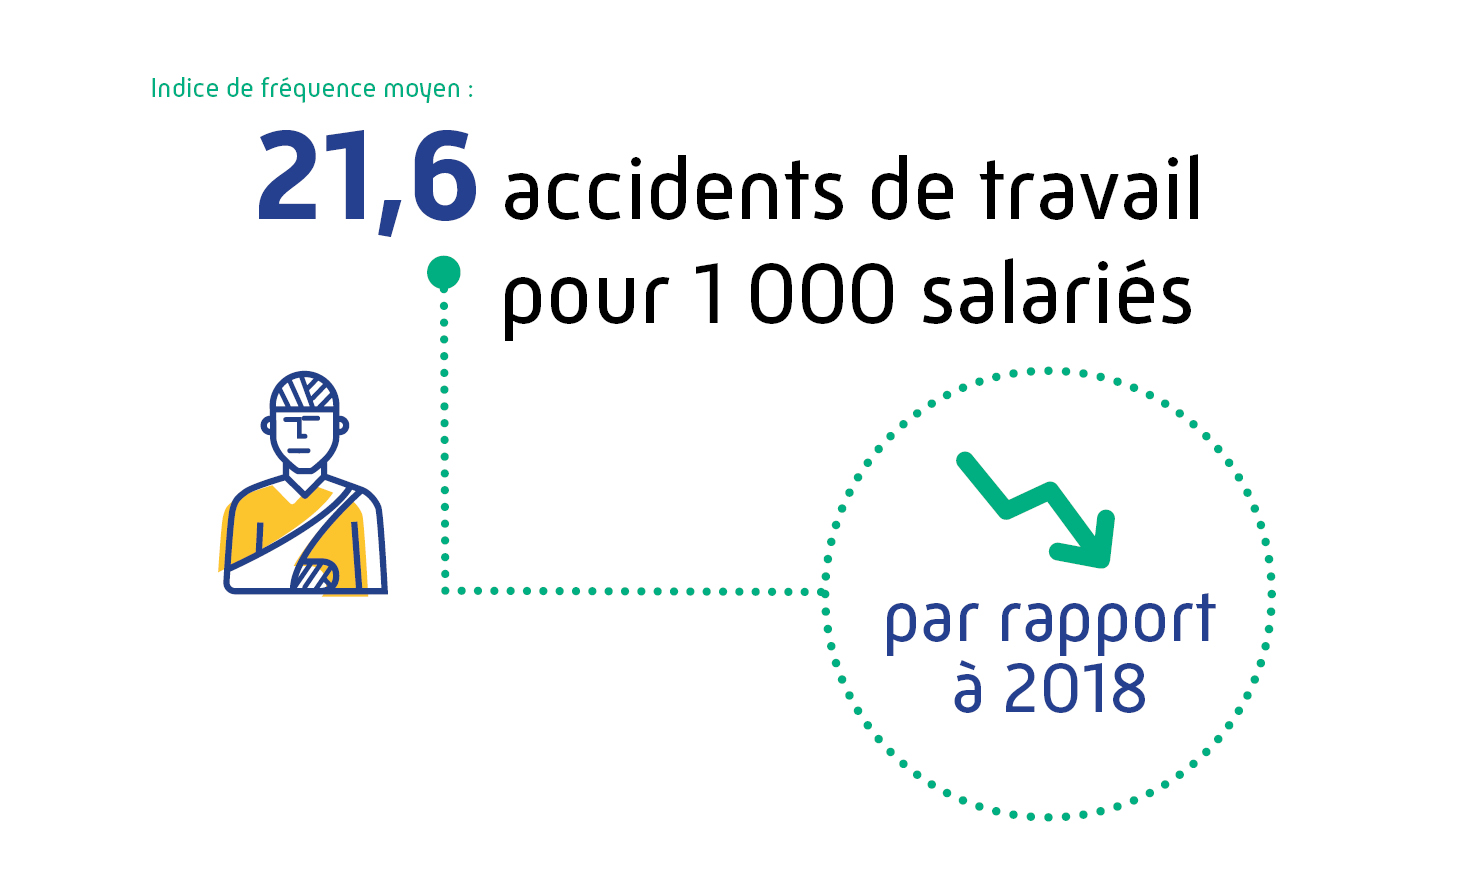 Indice de fréquence moyen : 21,6 accidents de travail pour 1 000 salariés par rapport à 2018